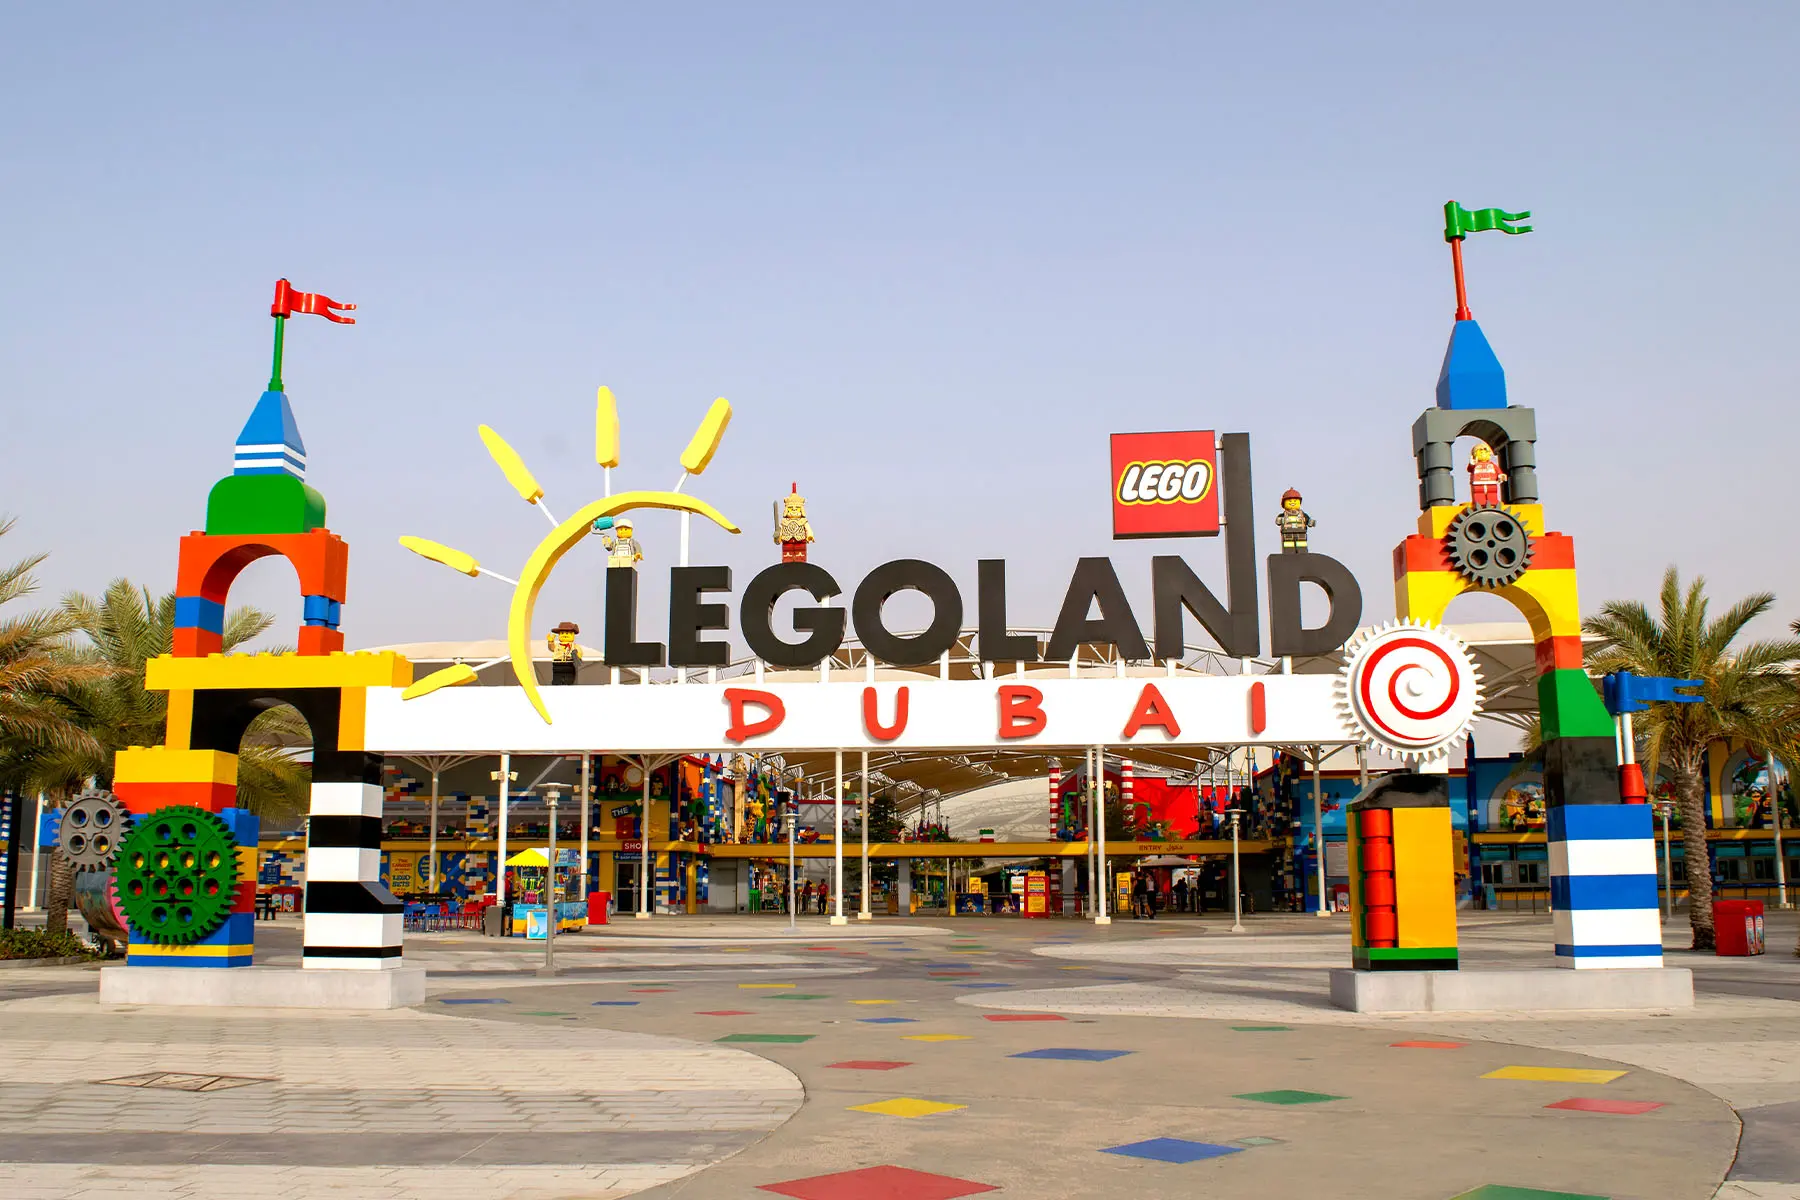 Legoland Park in Dubai